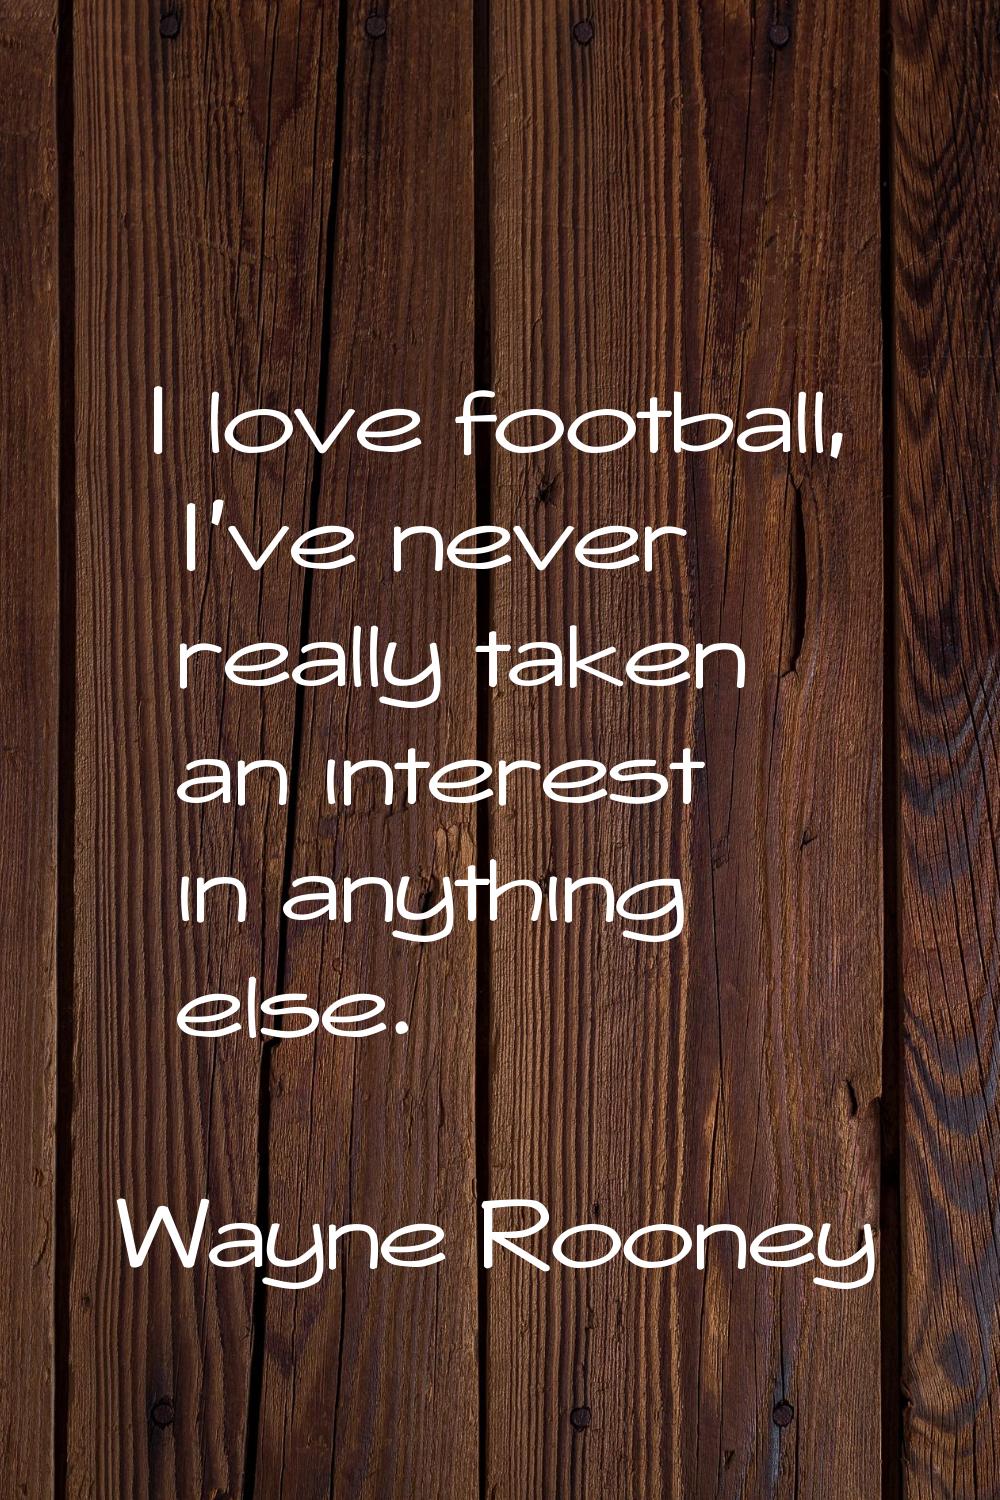 I love football, I've never really taken an interest in anything else.